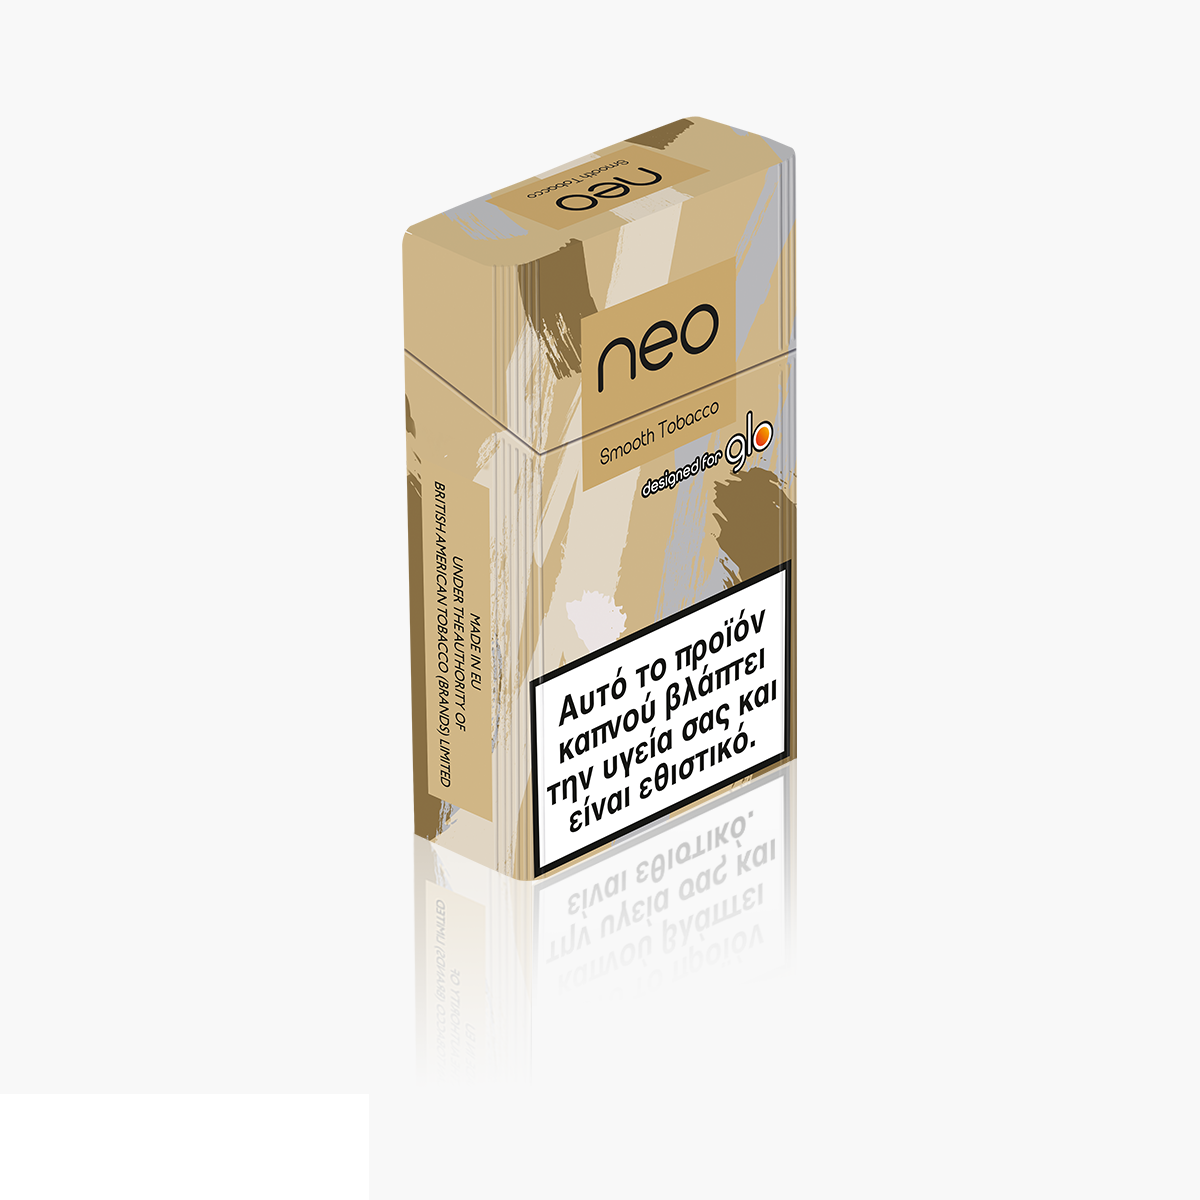 New Glo Hyper Neo Demi Smooth Tobacco Click Heated Tobacco Sticks